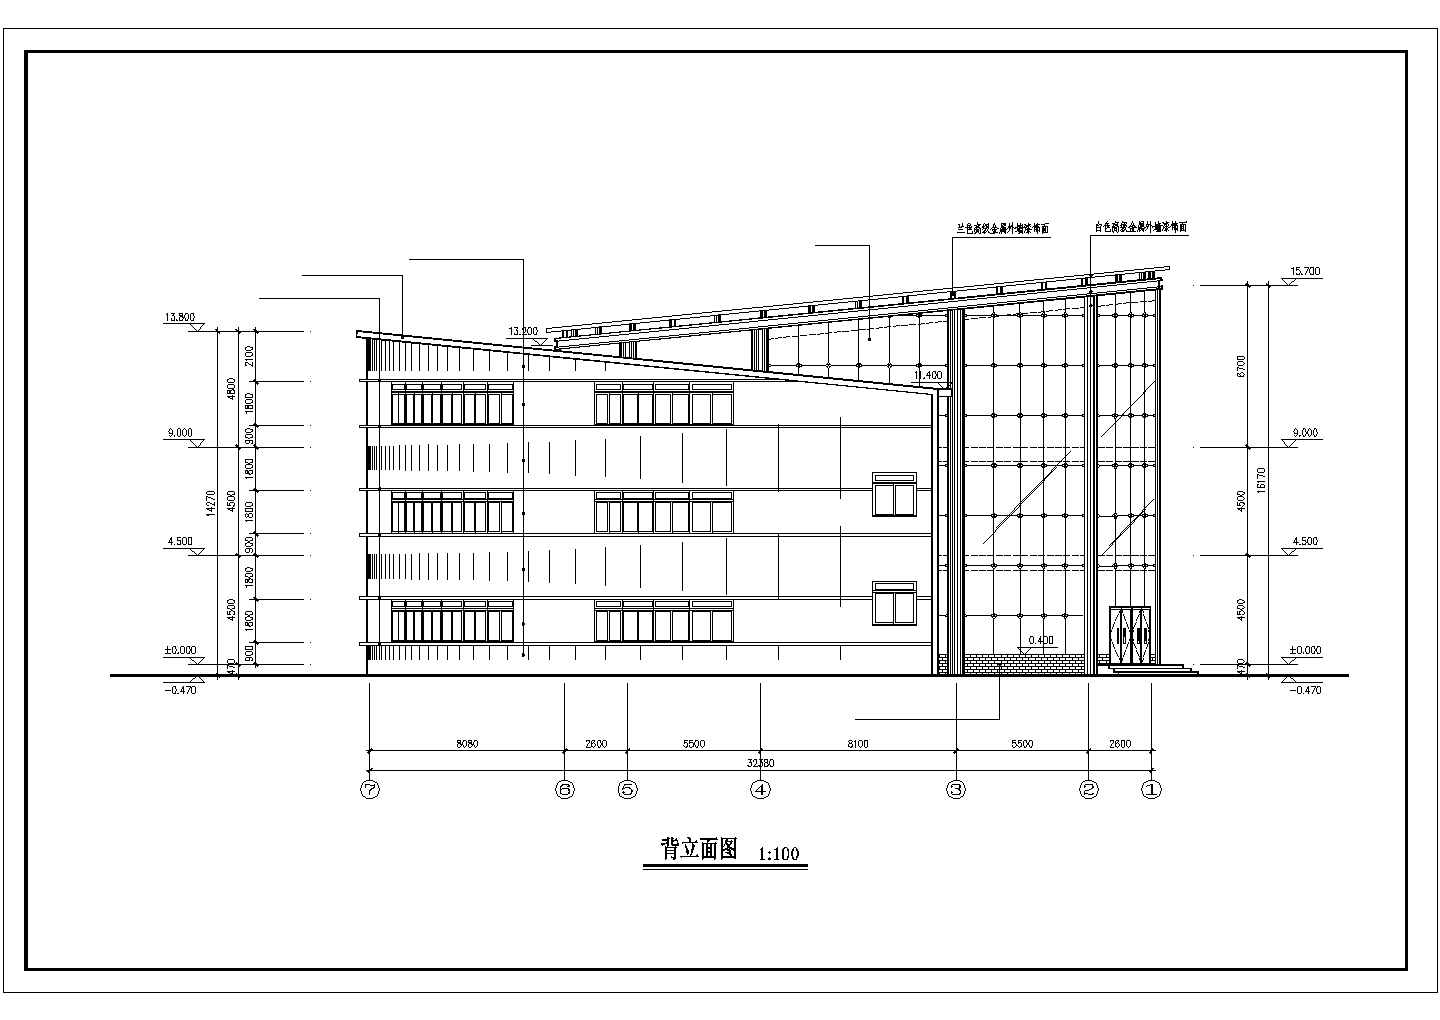 1980平米3层框架筒型结构休闲会所全套建筑设计CAD图纸